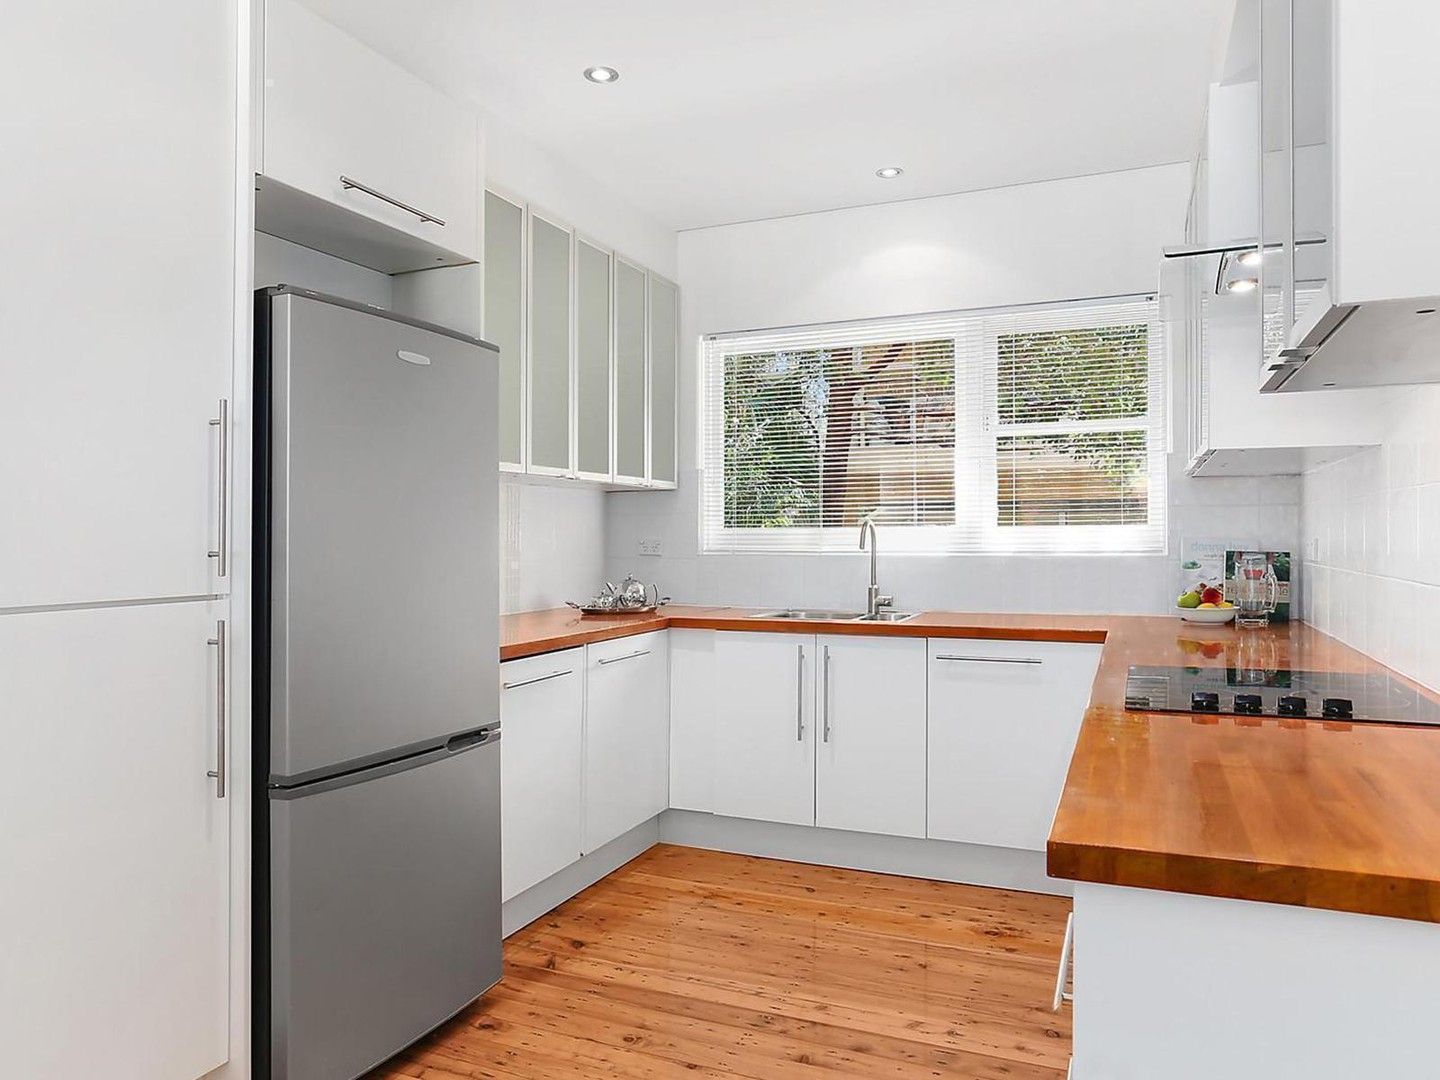 2 bedrooms Apartment / Unit / Flat in 1/5 Caronia Avenue CRONULLA NSW, 2230